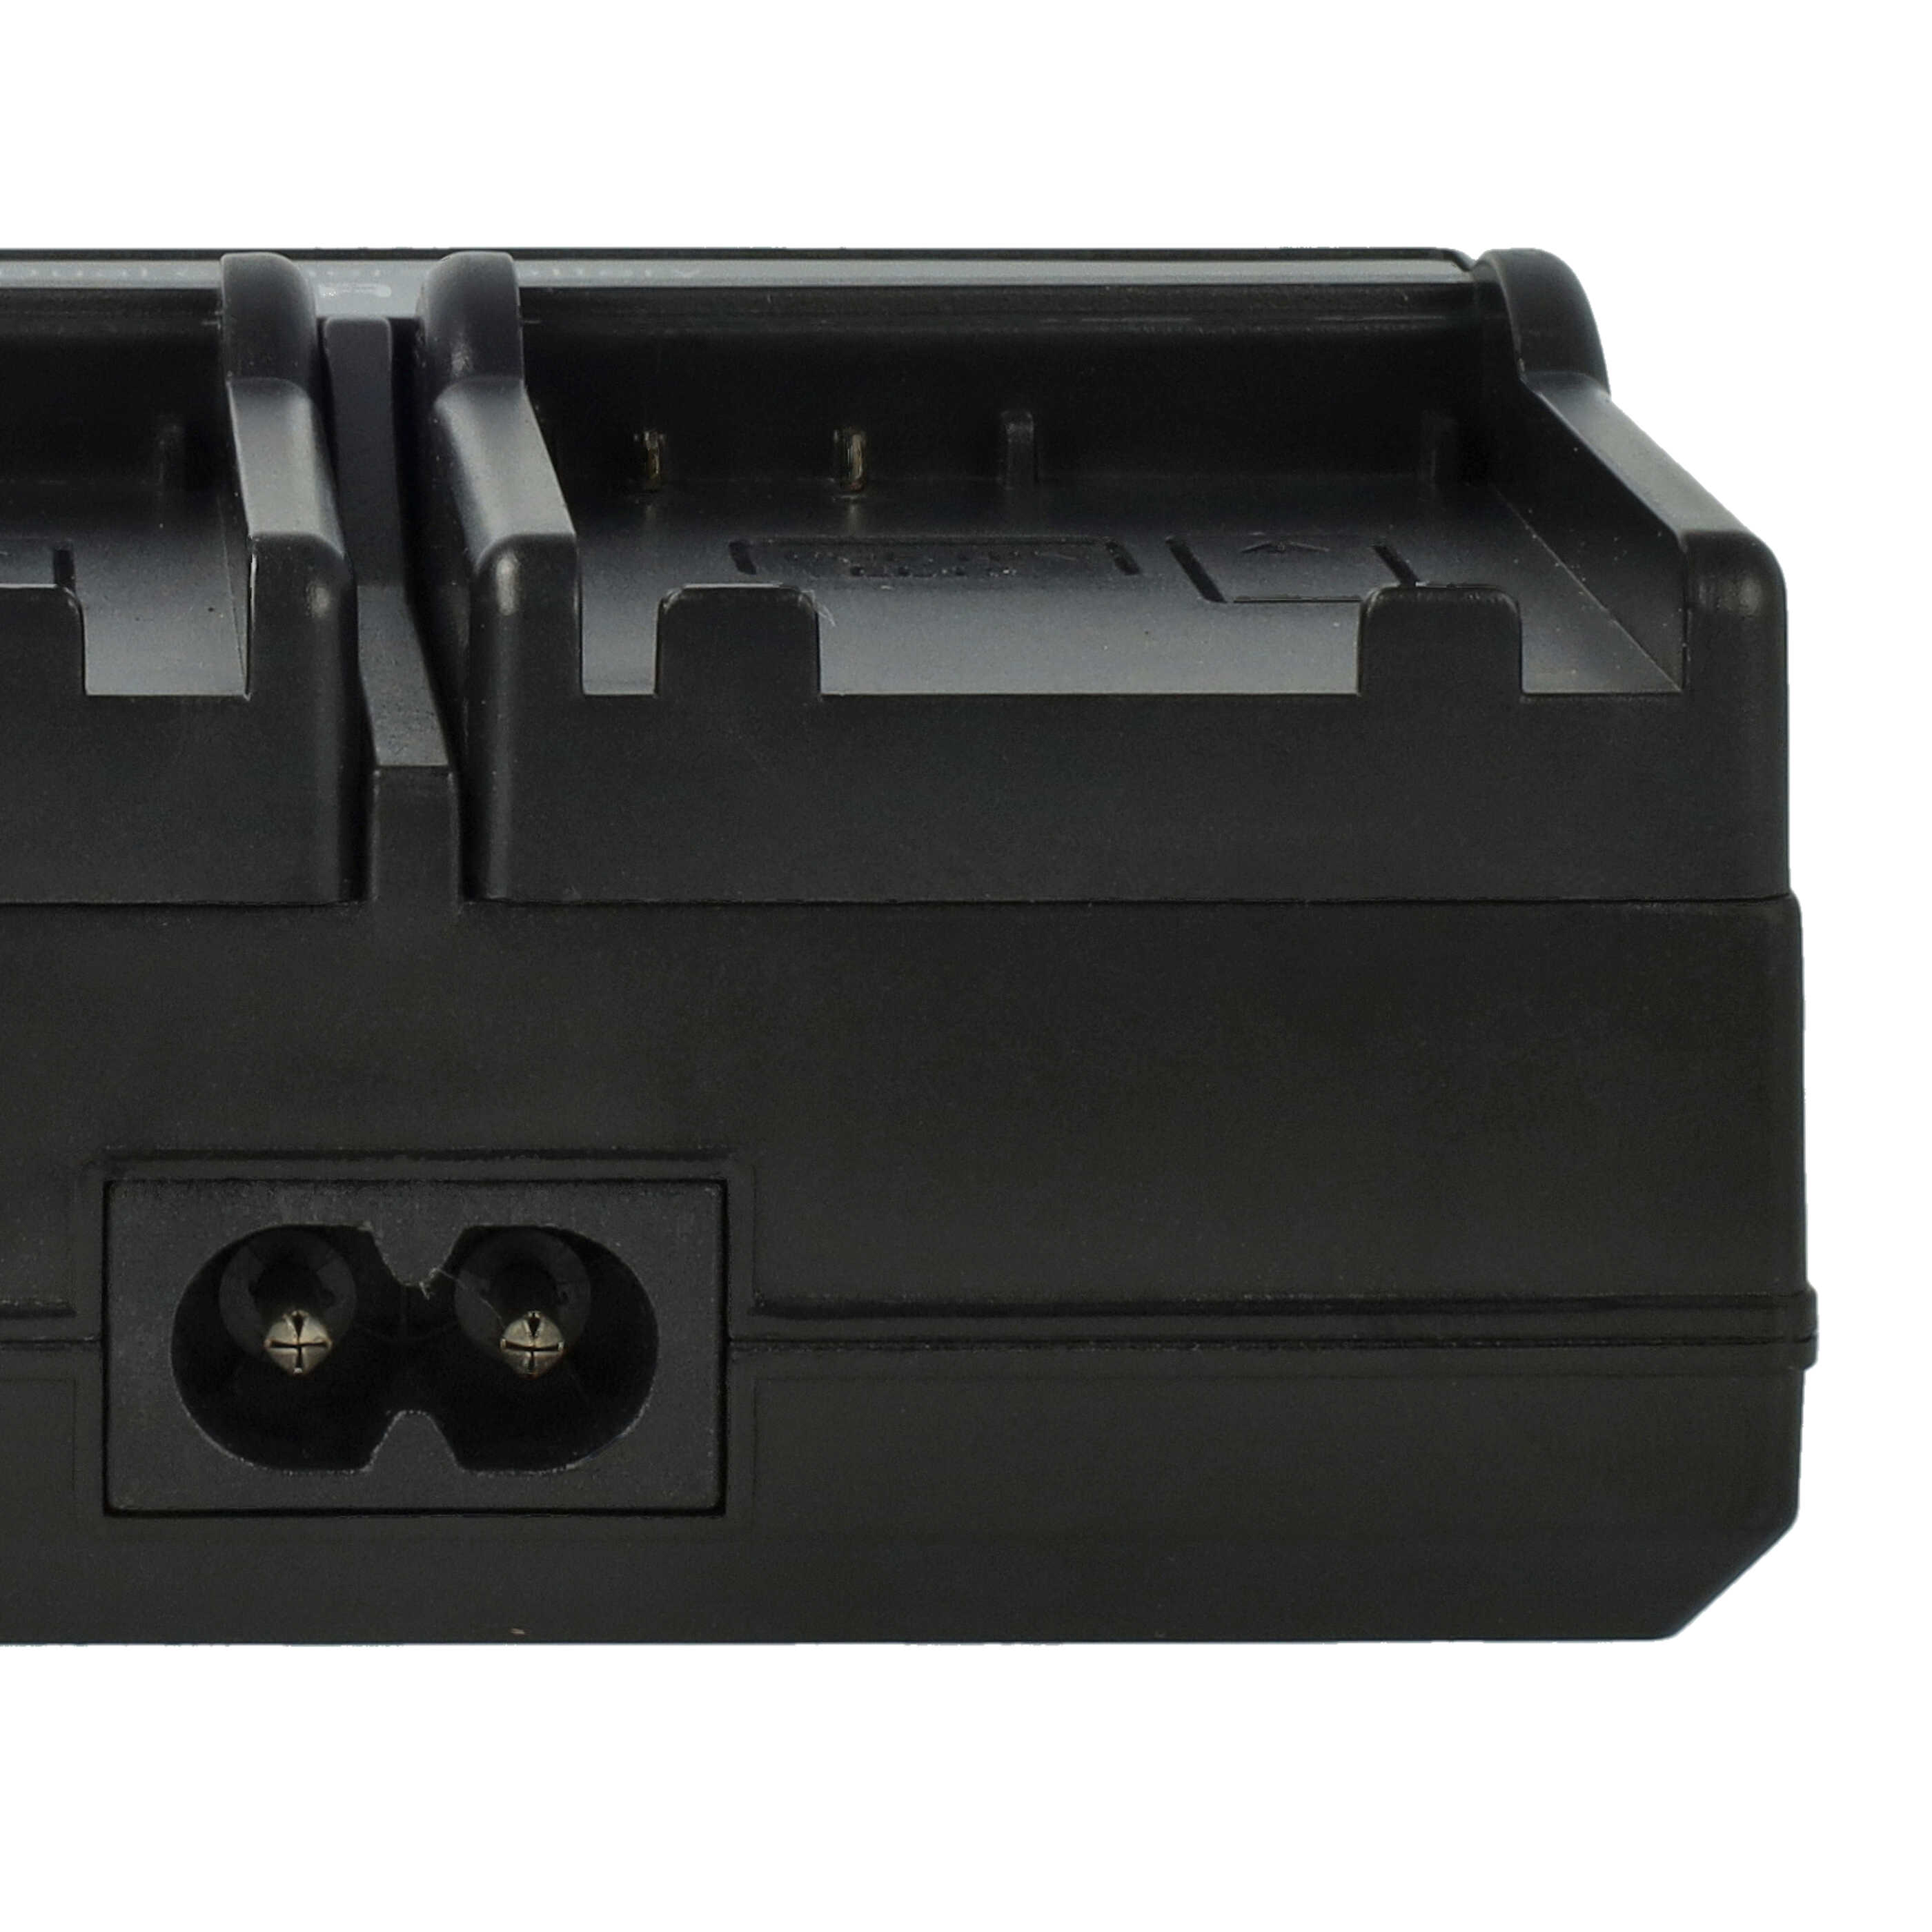 Caricabatterie + adattatore da auto per fotocamera Coolpix - 0.5 / 0.9A 4.2/8.4V 114,5cm